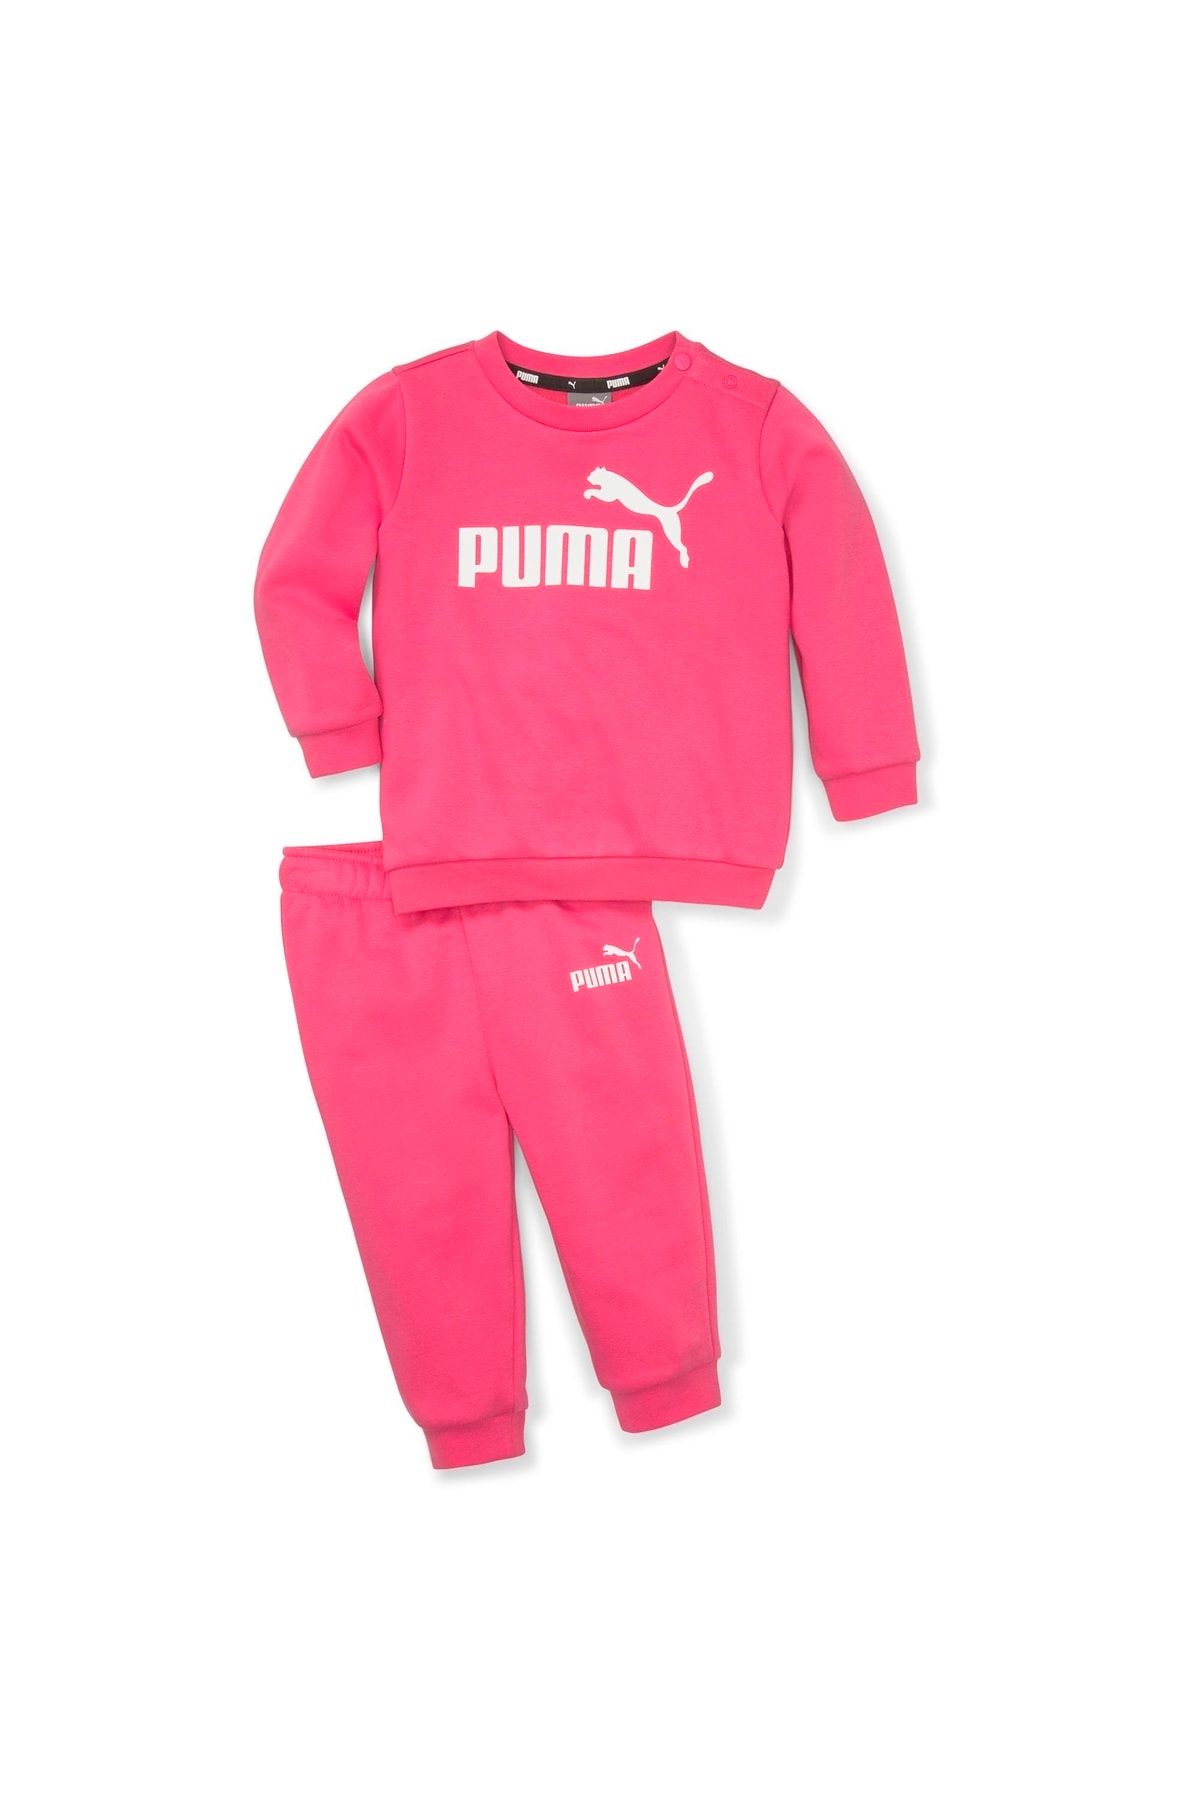 Puma Minicats ESS Crew Jogger FL Glowing Pink - Pembe Alt-Üst Çocuk Takım